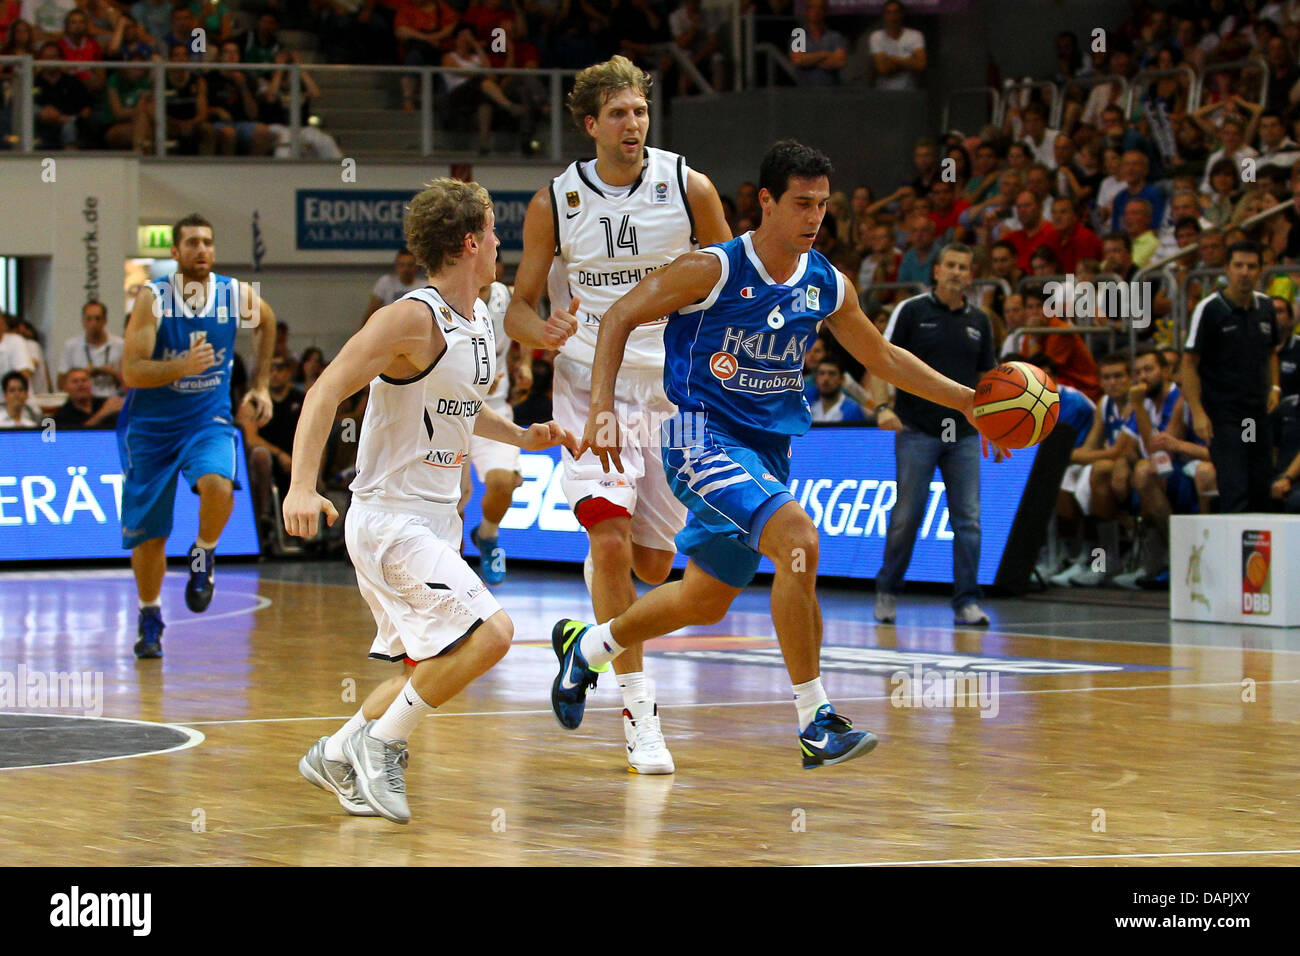 L'Allemagne Dirk Nowitzki (C) et par Guenther (L), est comparée à la Grèce  Nikos Zisis durant la Supercoupe de basket-ball match Beko Allemagne contre  Turquie au Stechert Arena à Bamberg, Allemagne, 20